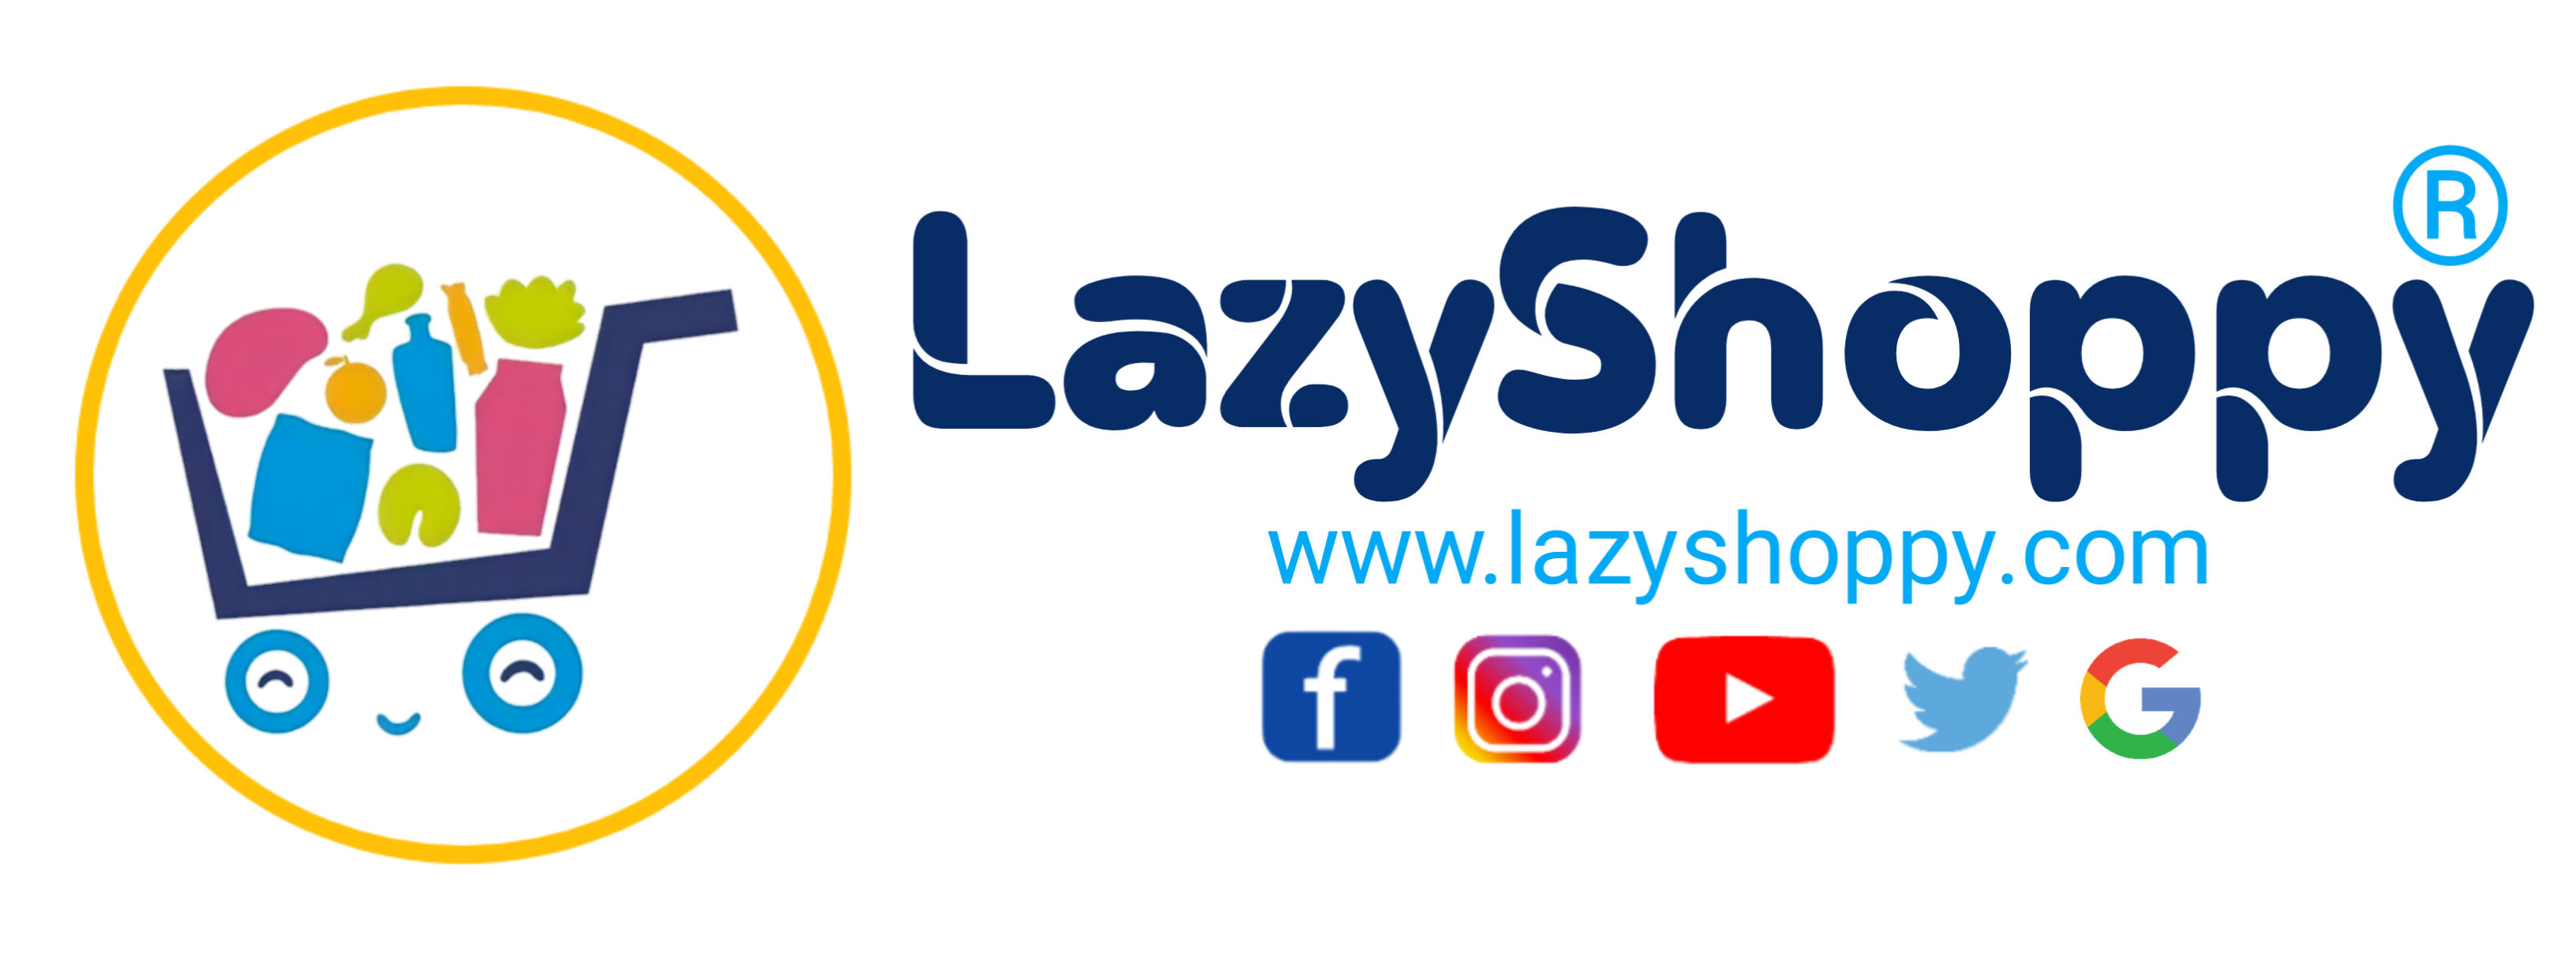 LazyShoppy